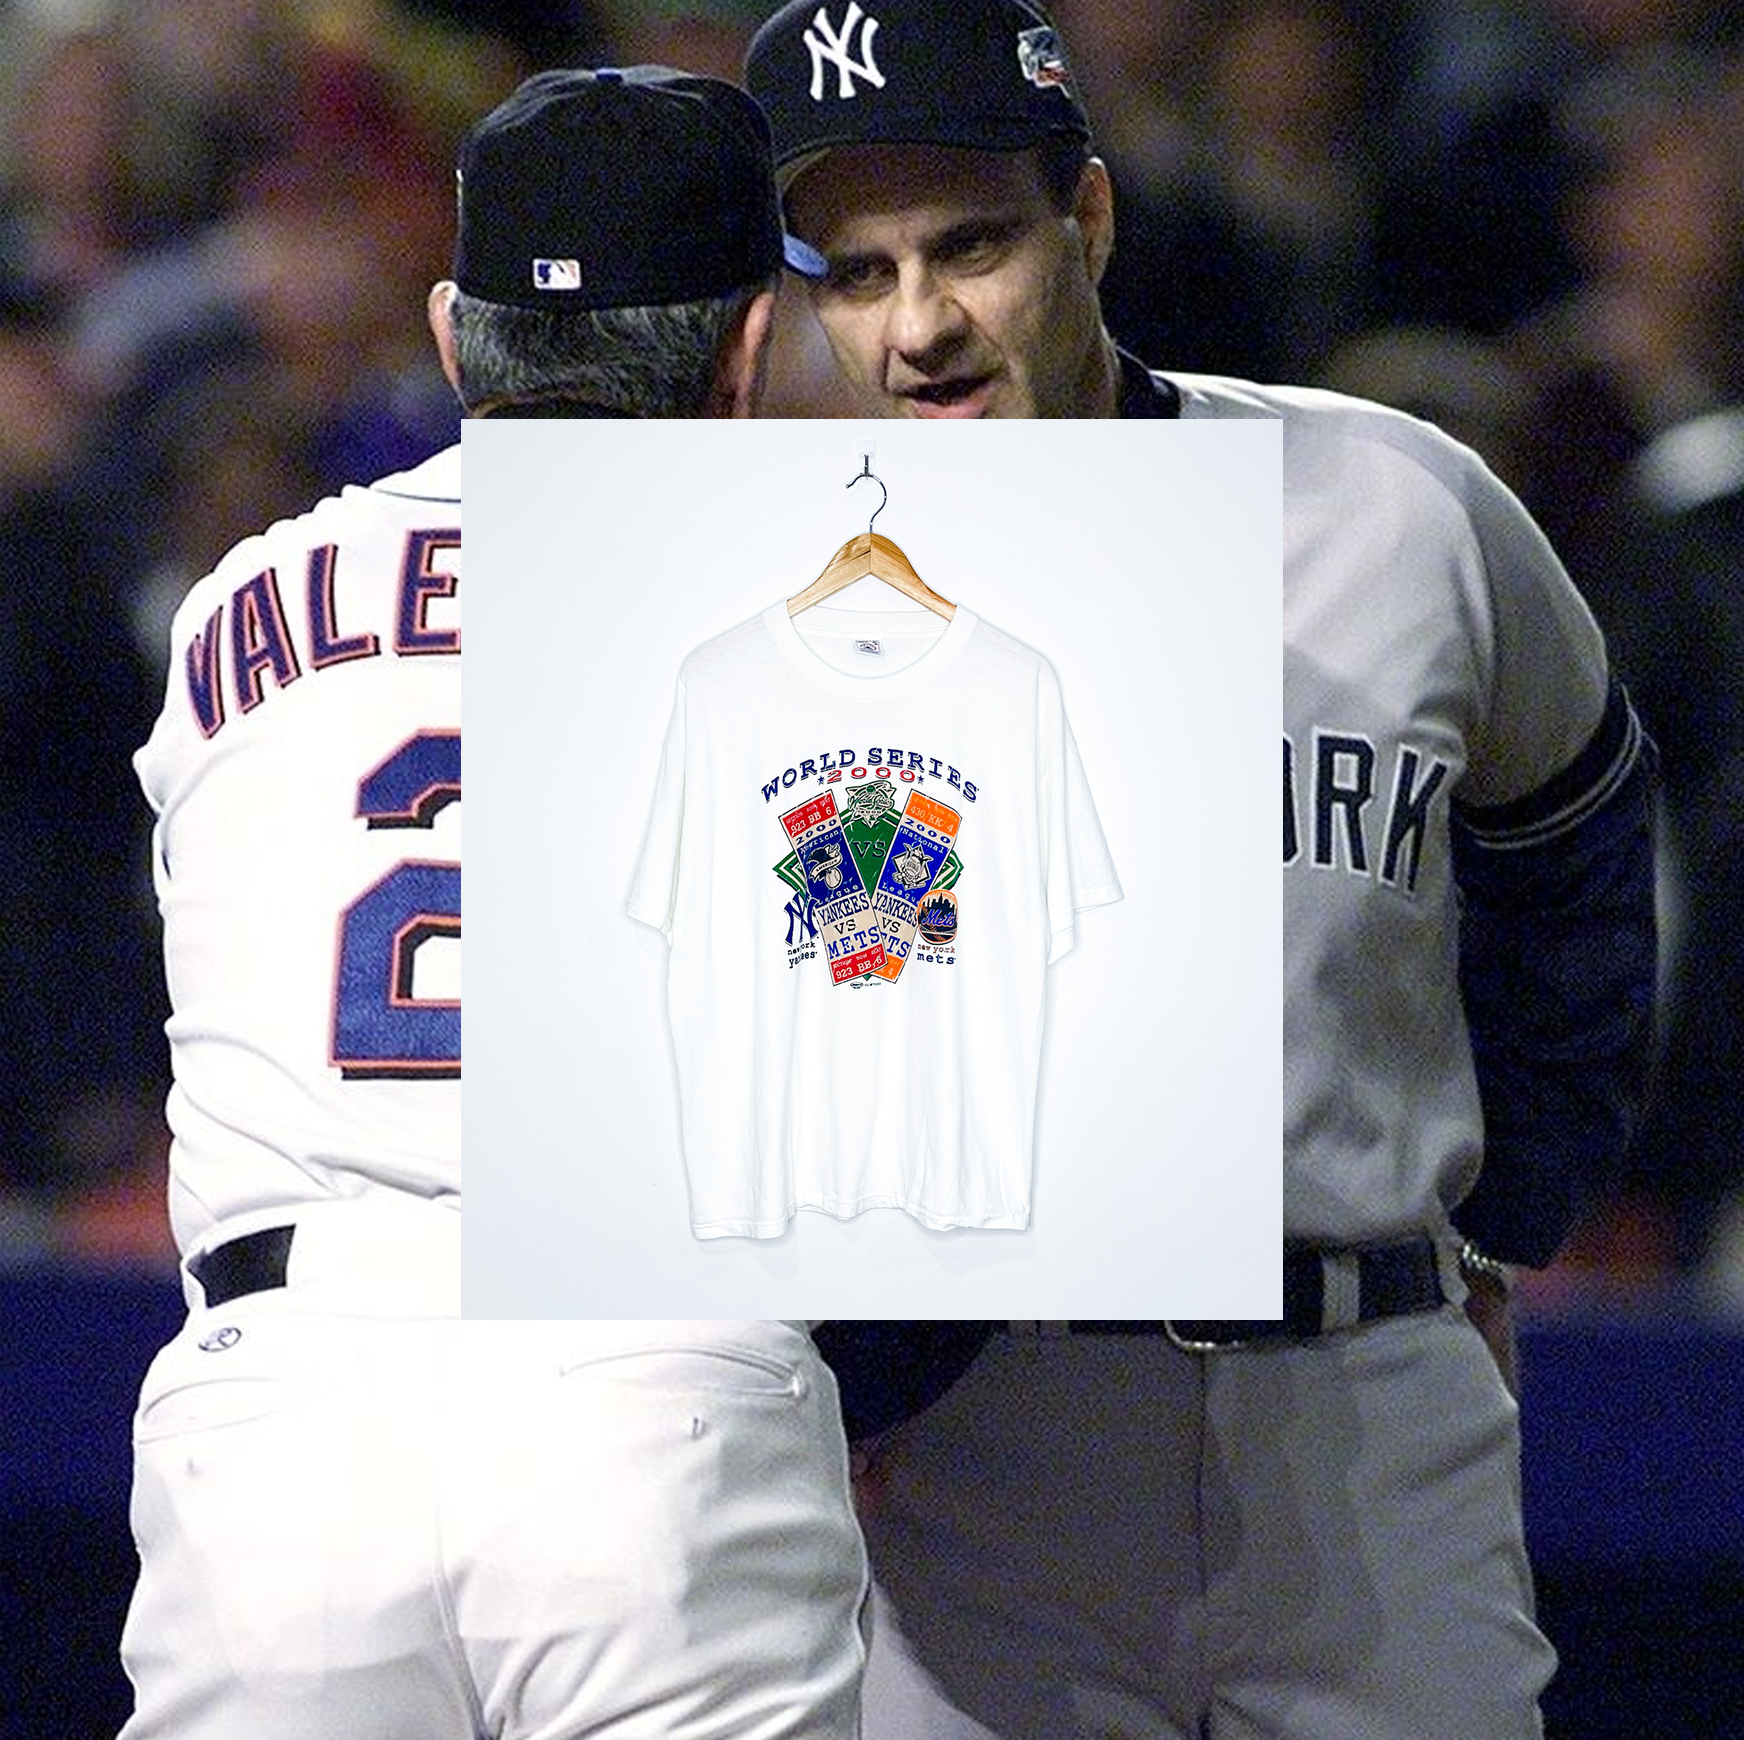 2000 World Series "New York Yankees vs New York Mets" VINTAGE TICKET TEE